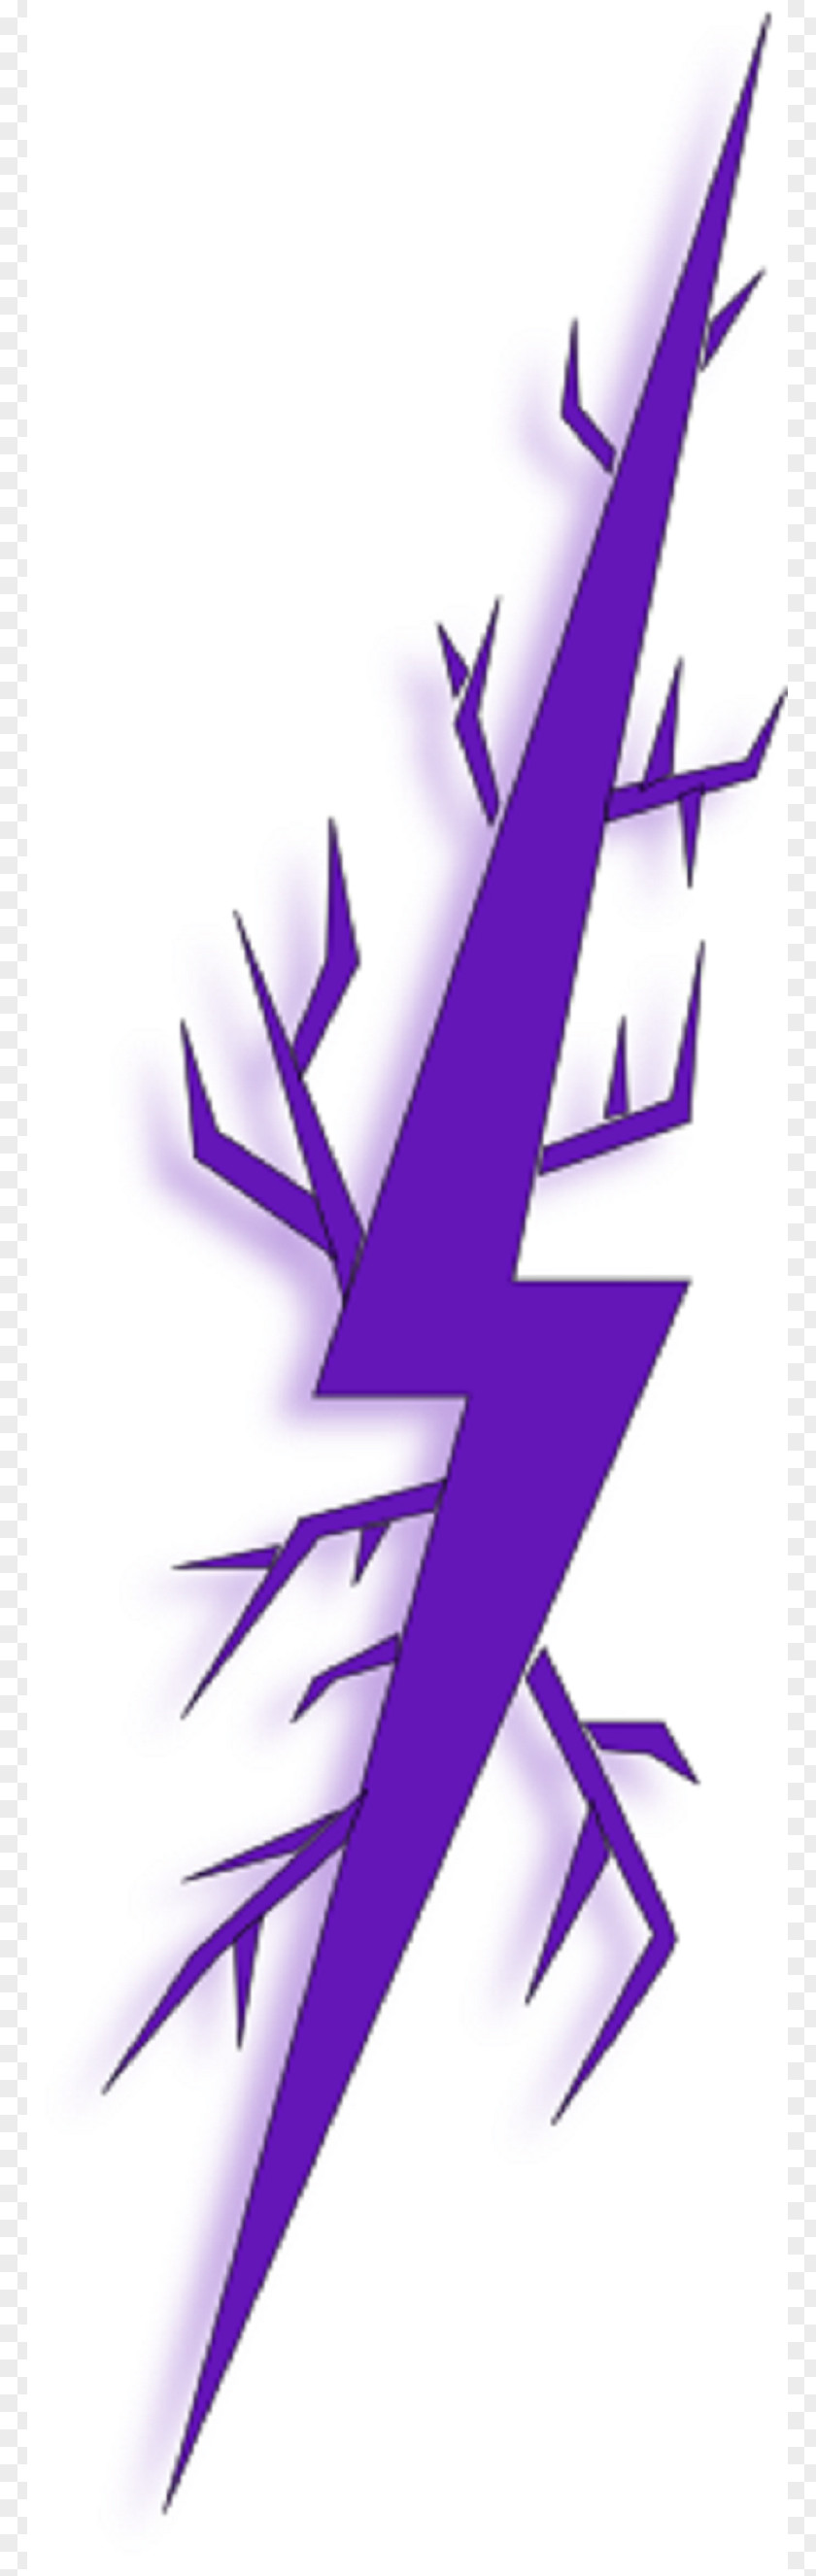 Lightning Electric Spark Clip Art PNG